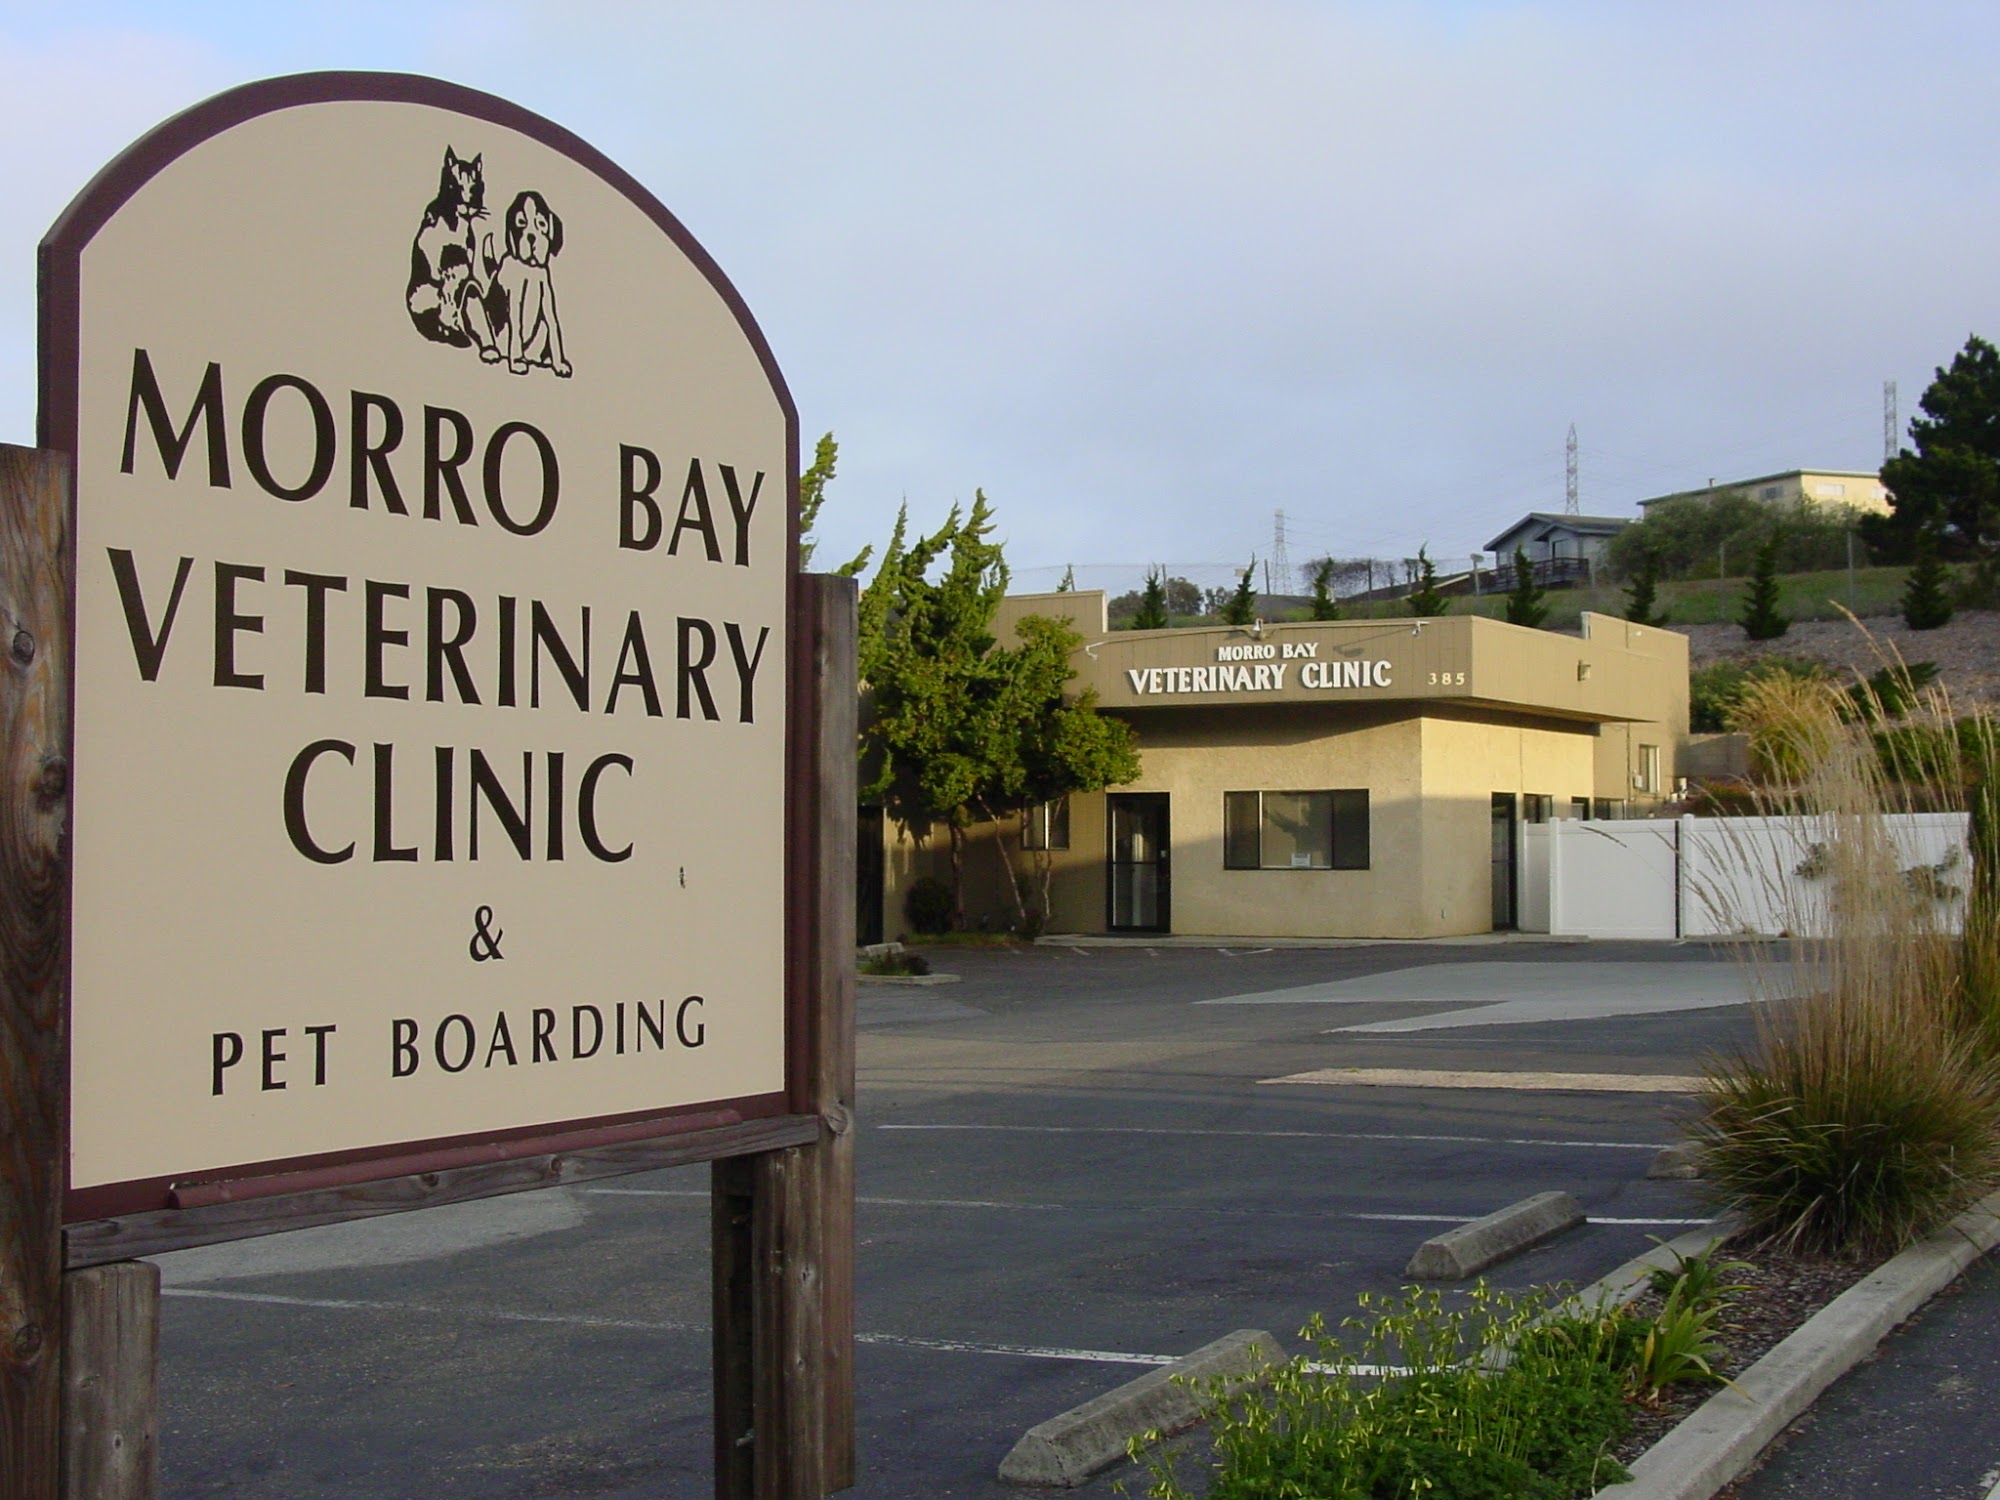 Morro Bay Veterinary Clinic